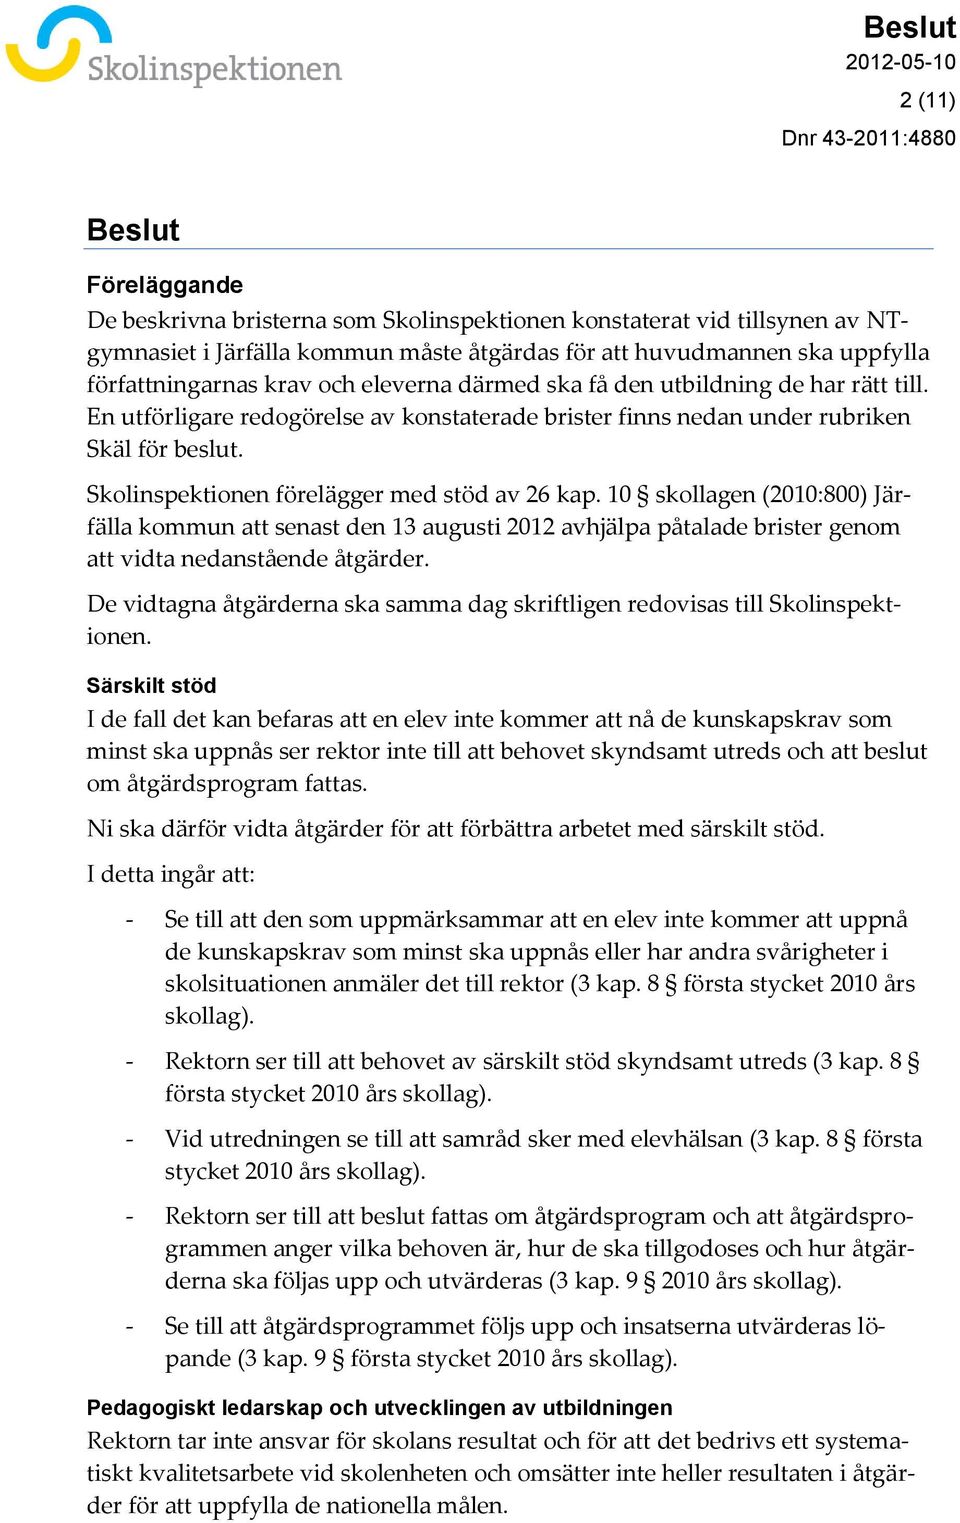 Skolinspektionen förelägger med stöd av 26 kap. 10 skollagen (2010:800) Järfälla kommun att senast den 13 augusti 2012 avhjälpa påtalade brister genom att vidta nedanstående åtgärder.